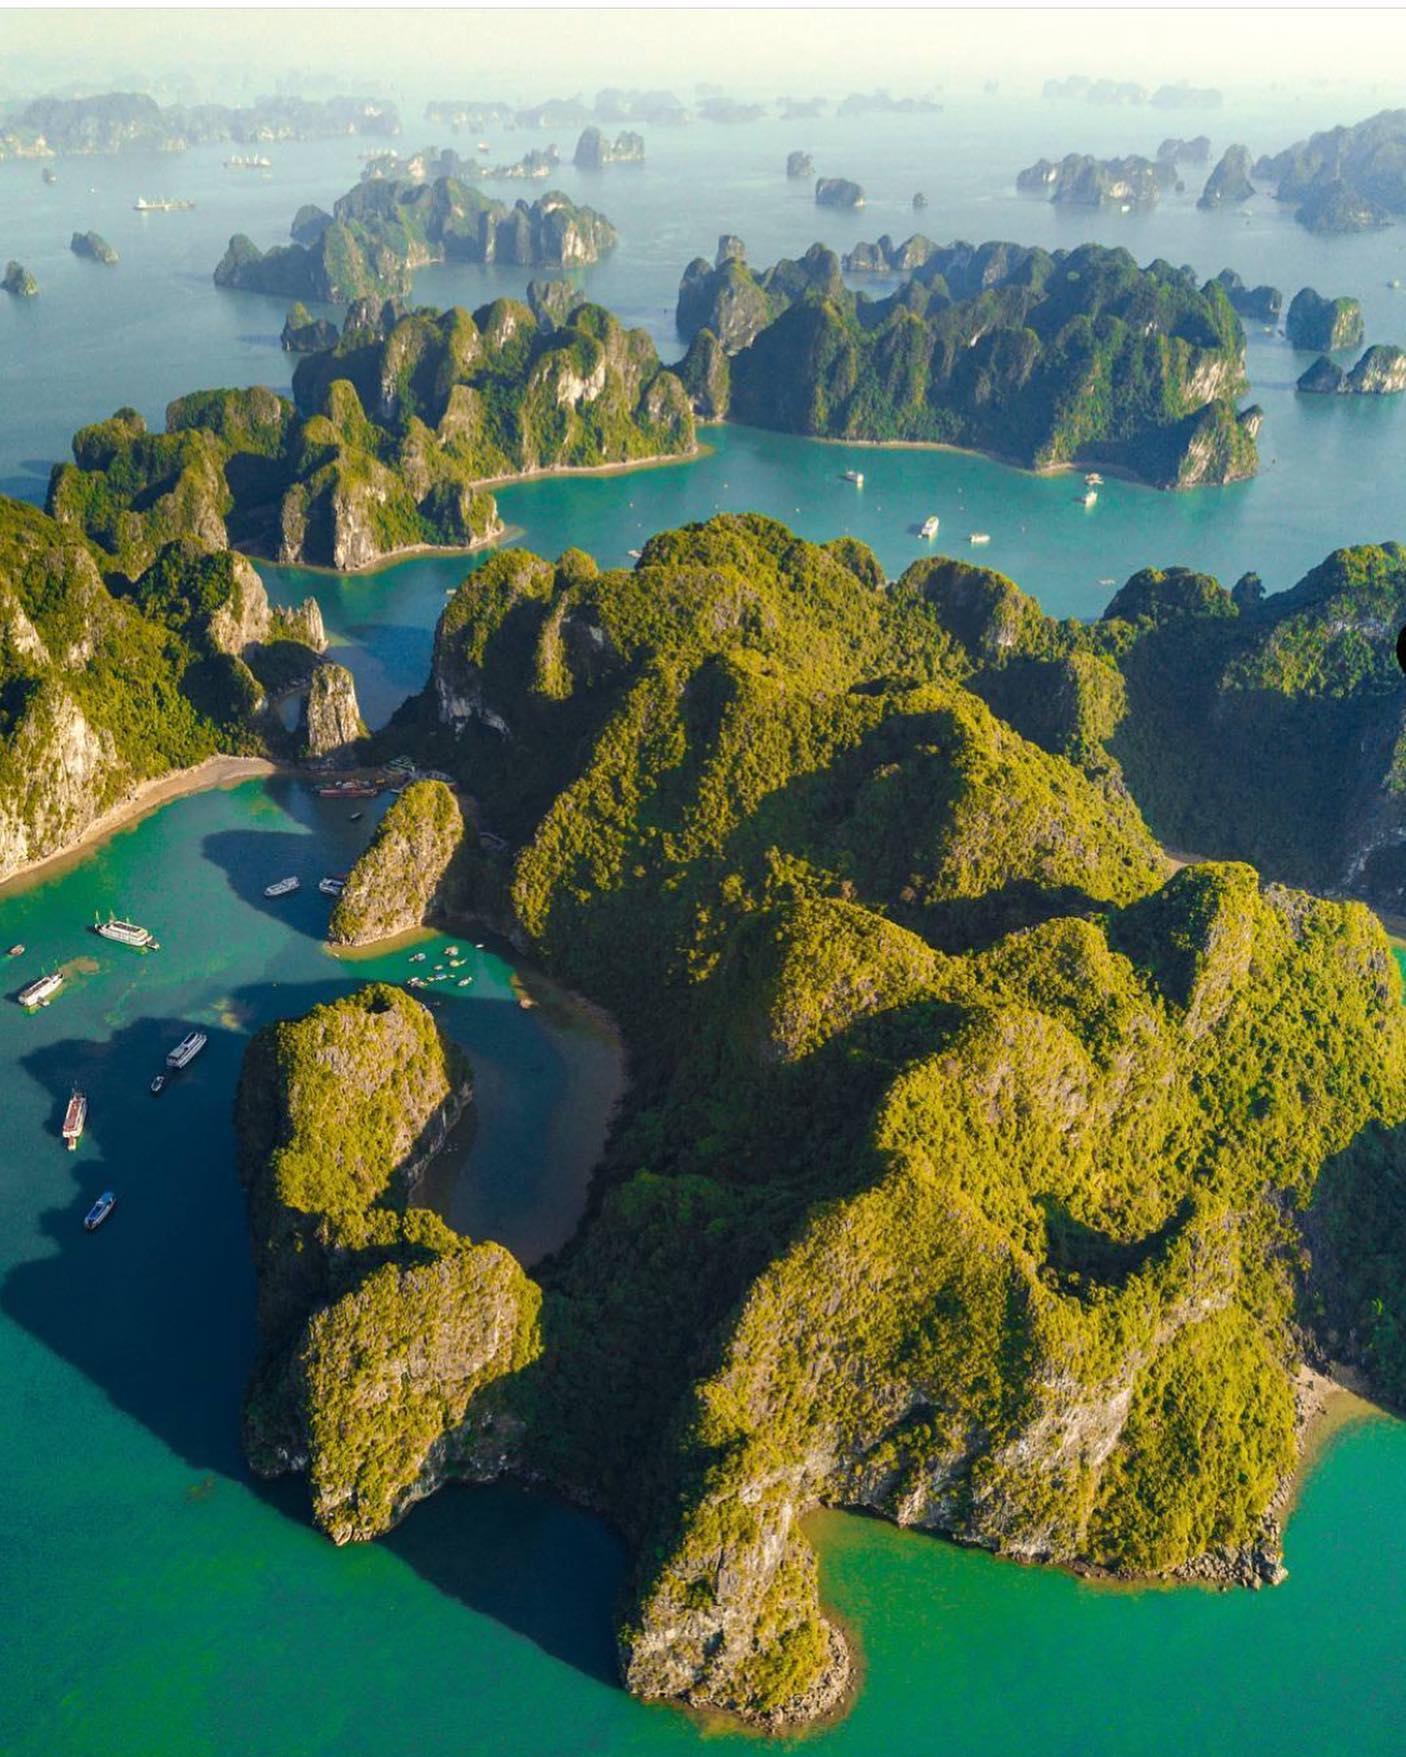 Vịnh của Việt Nam được trang du lịch nước ngoài khen ngợi: Địa điểm tham quan đẹp hàng đầu Đông Nam Á, chưa đi thì quá tiếc - Ảnh 3.